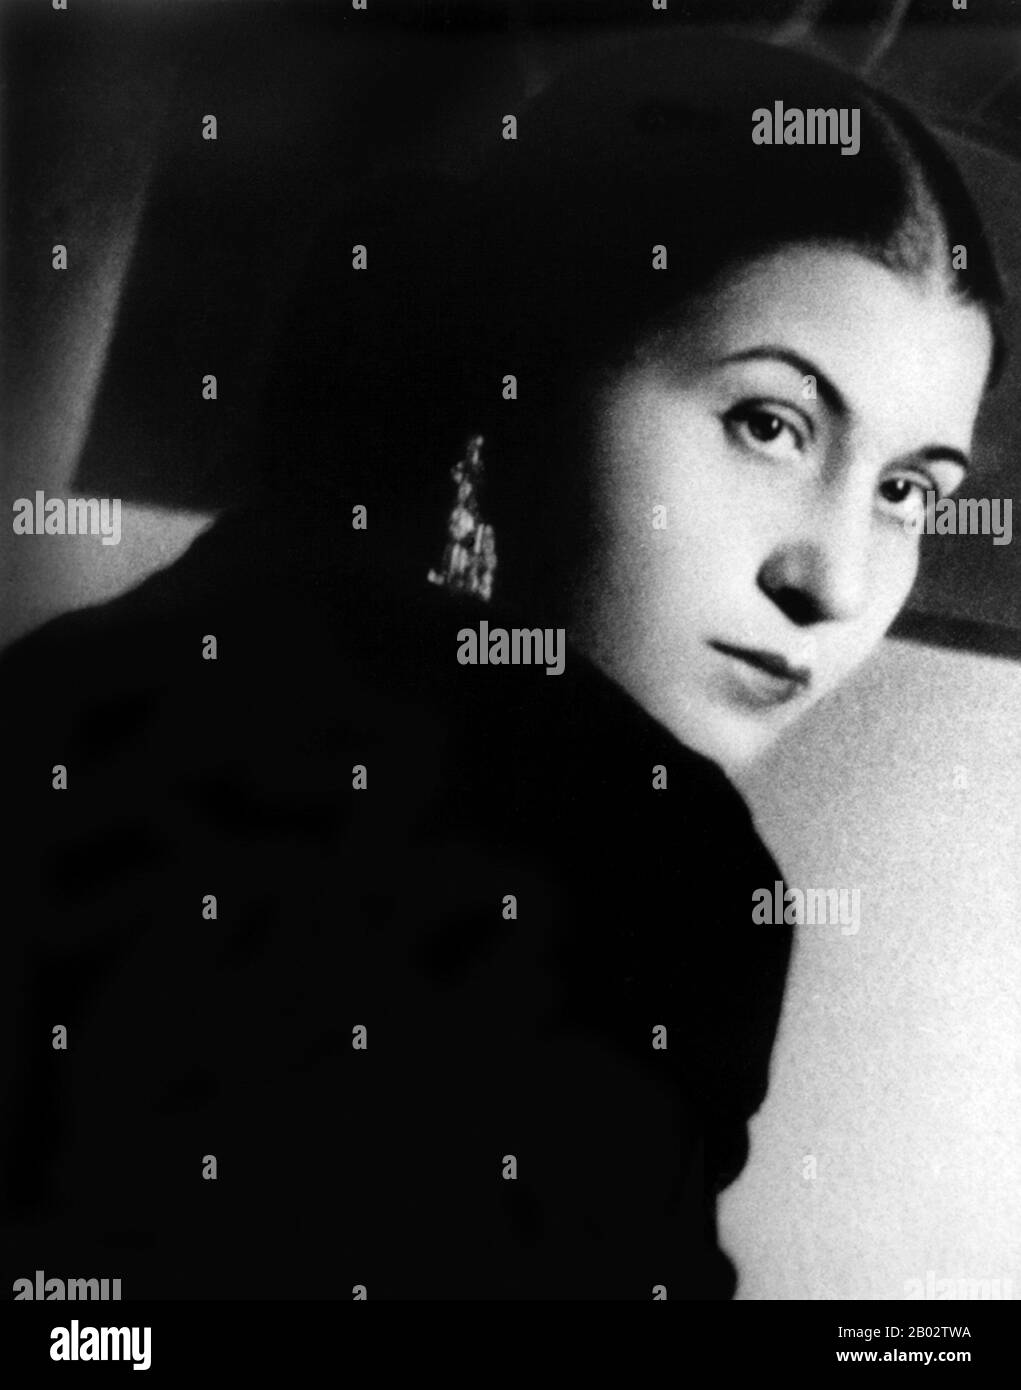 Umm Kulthum, nato Fatimah Ibrahim AS-Sayyid al-Biltagi, il 30 dicembre 1975, è stato un . 1920s 1970s Quattro decenni dopo la sua morte nel 1975, è ancora ampiamente considerata come la più grande cantante araba di sempre. Foto Stock